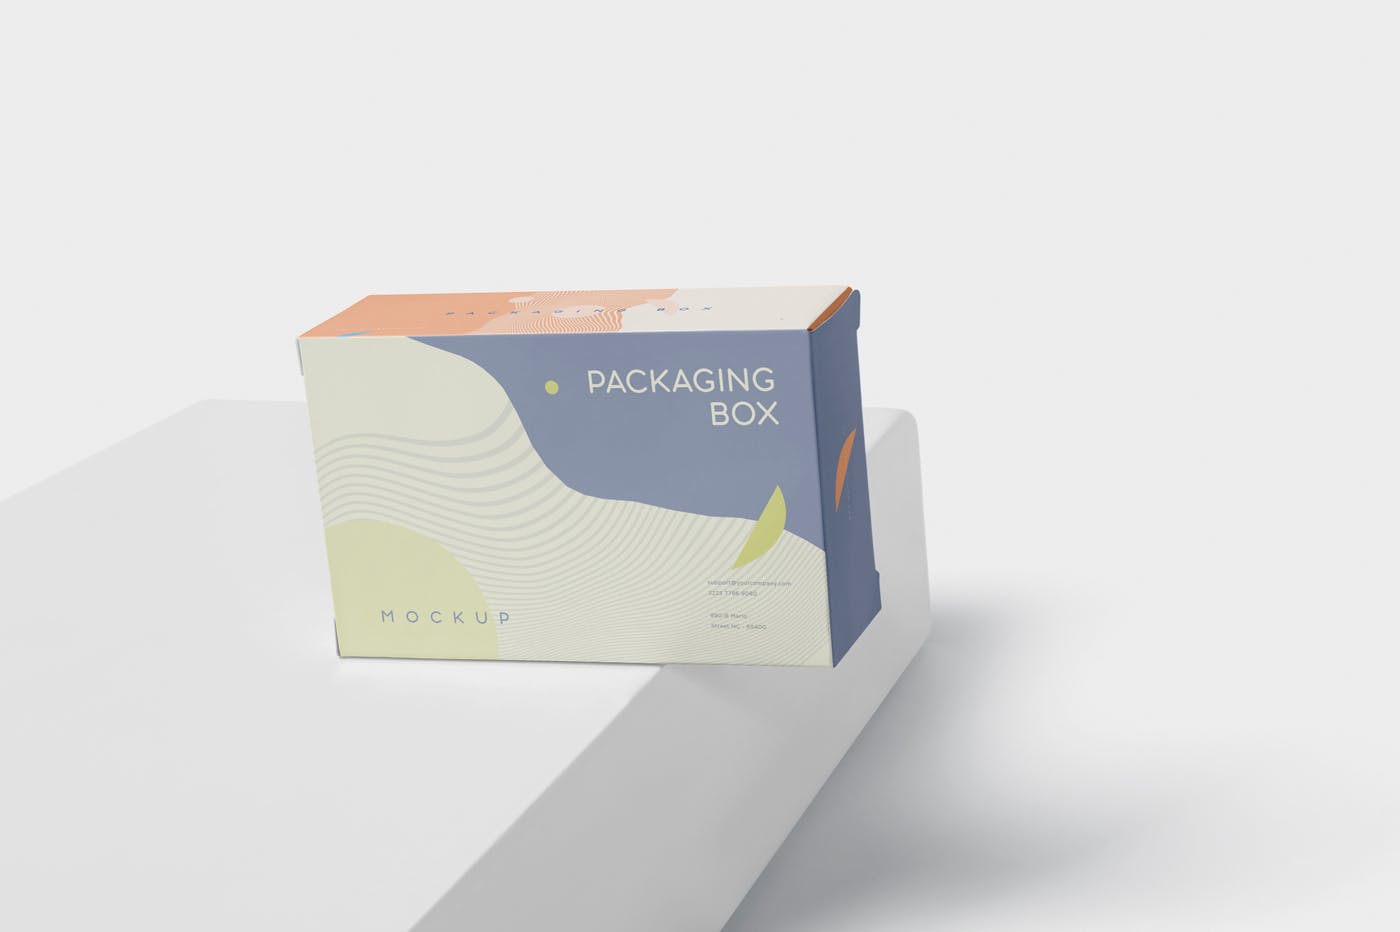 扁平矩形产品包装盒效果图蚂蚁素材精选 Package Box Mockup – Slim Rectangle Shape插图(4)